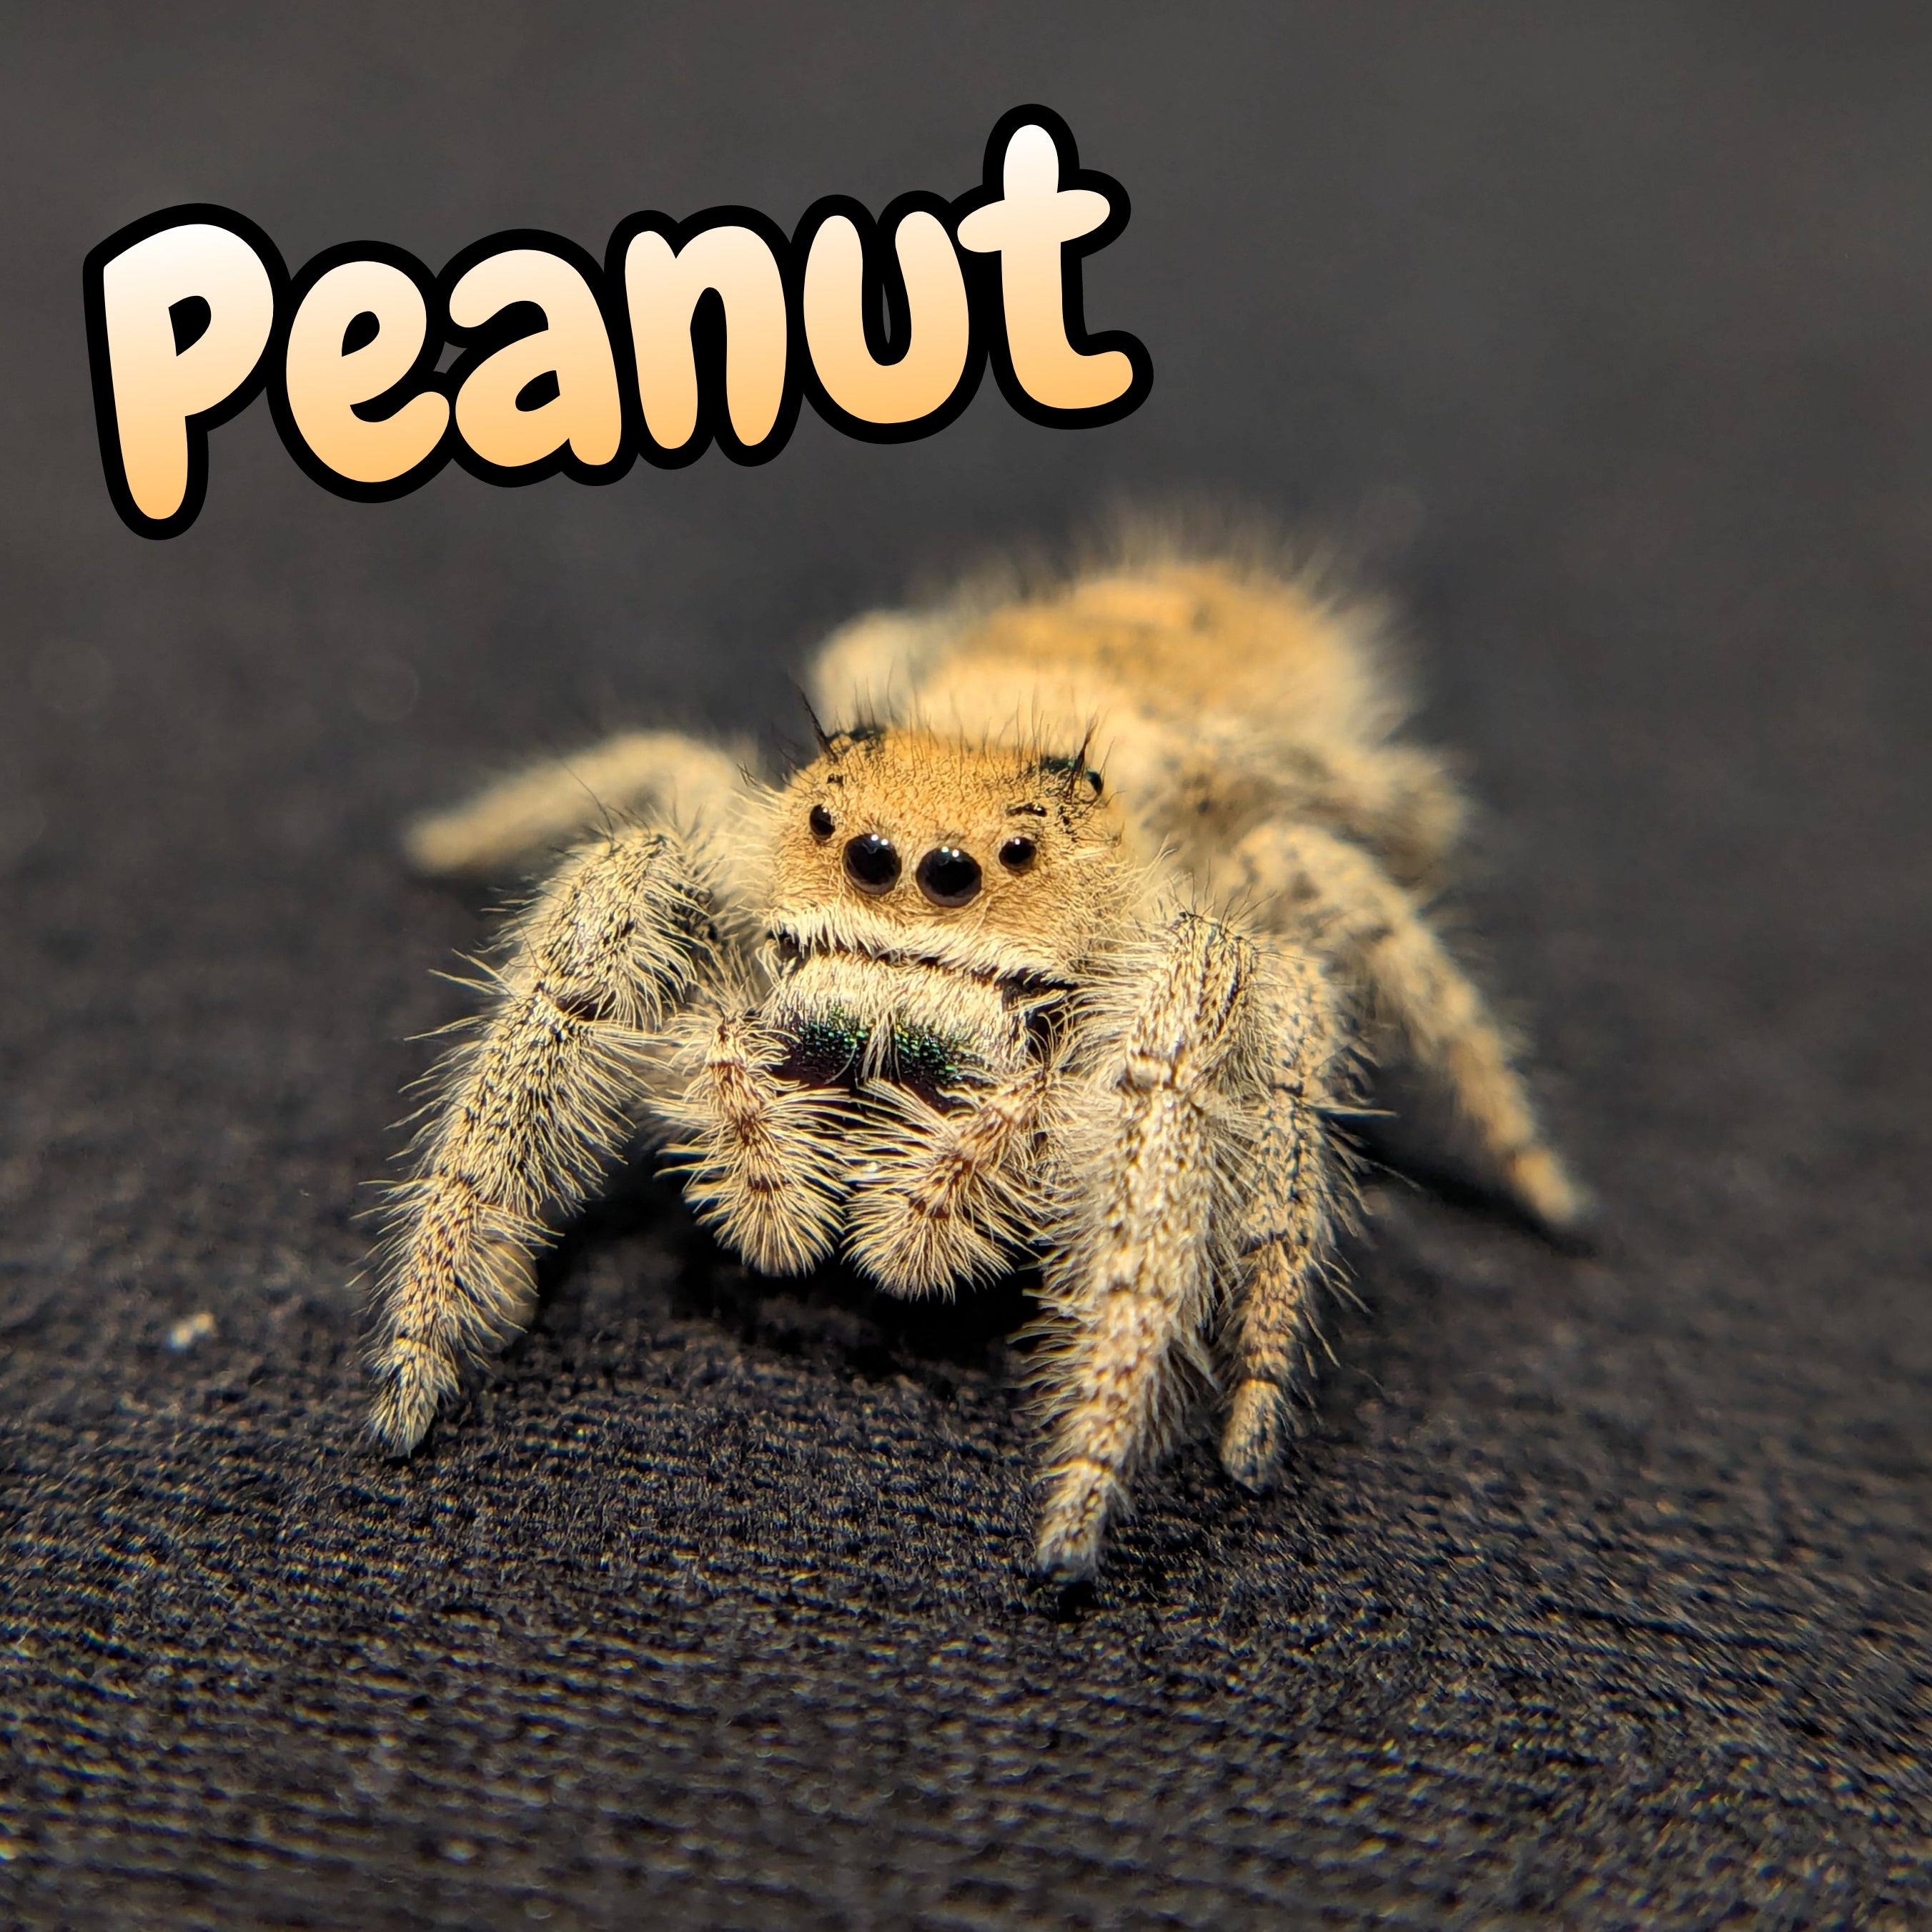 Regal Jumping Spider "Peanut"